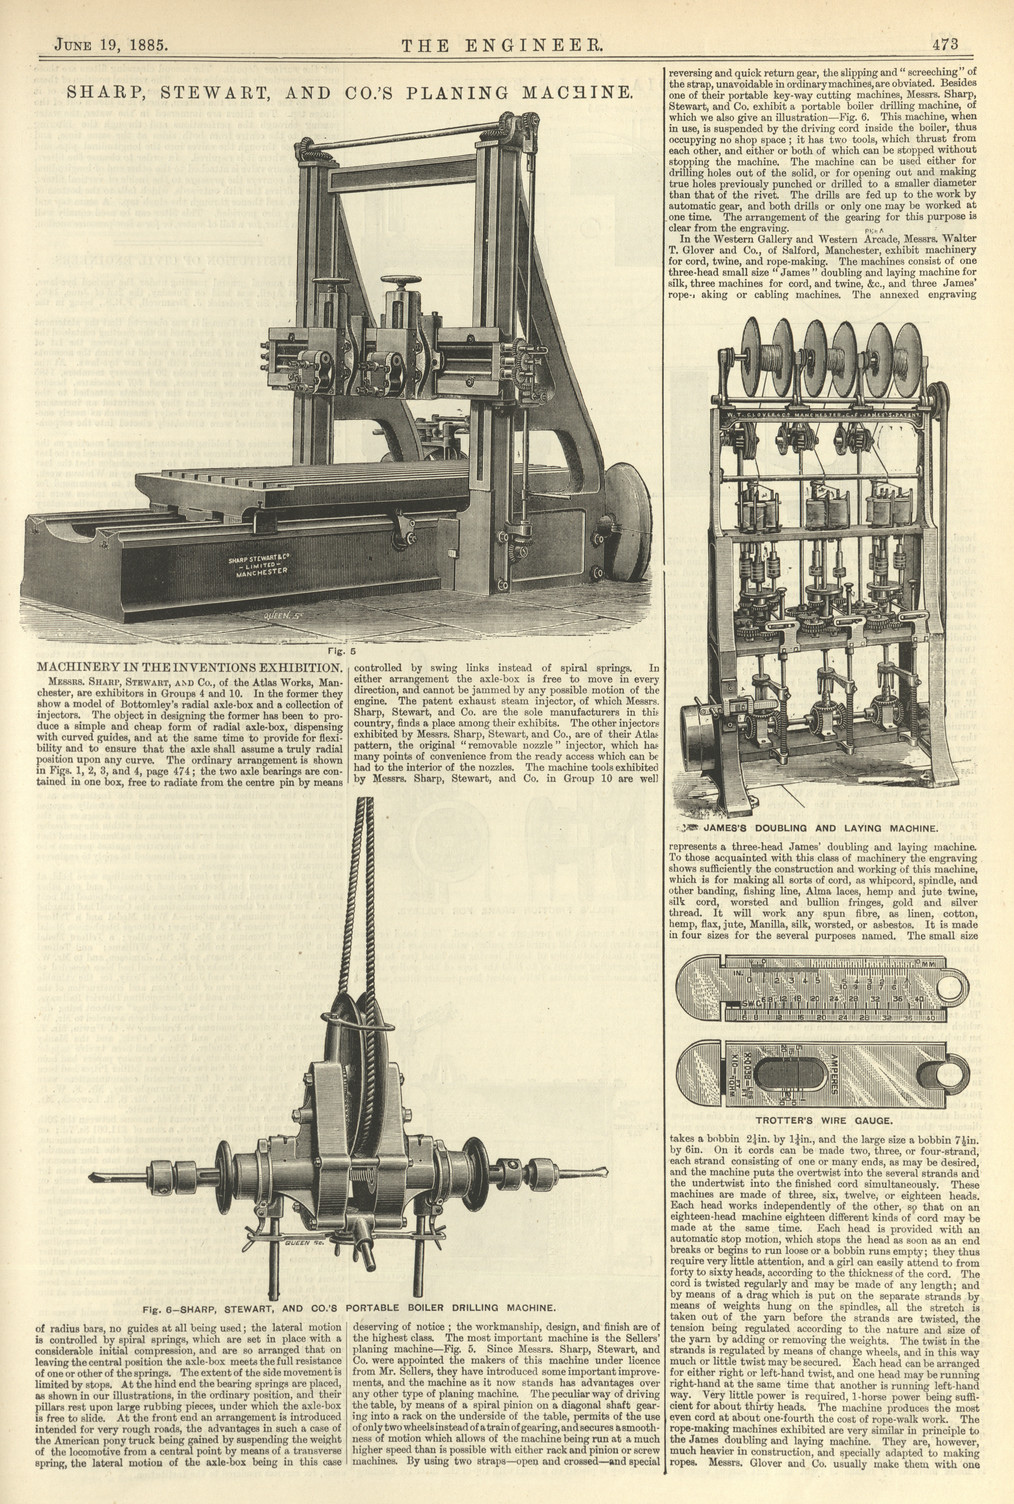 The Engineer, Vol.59, 19 June